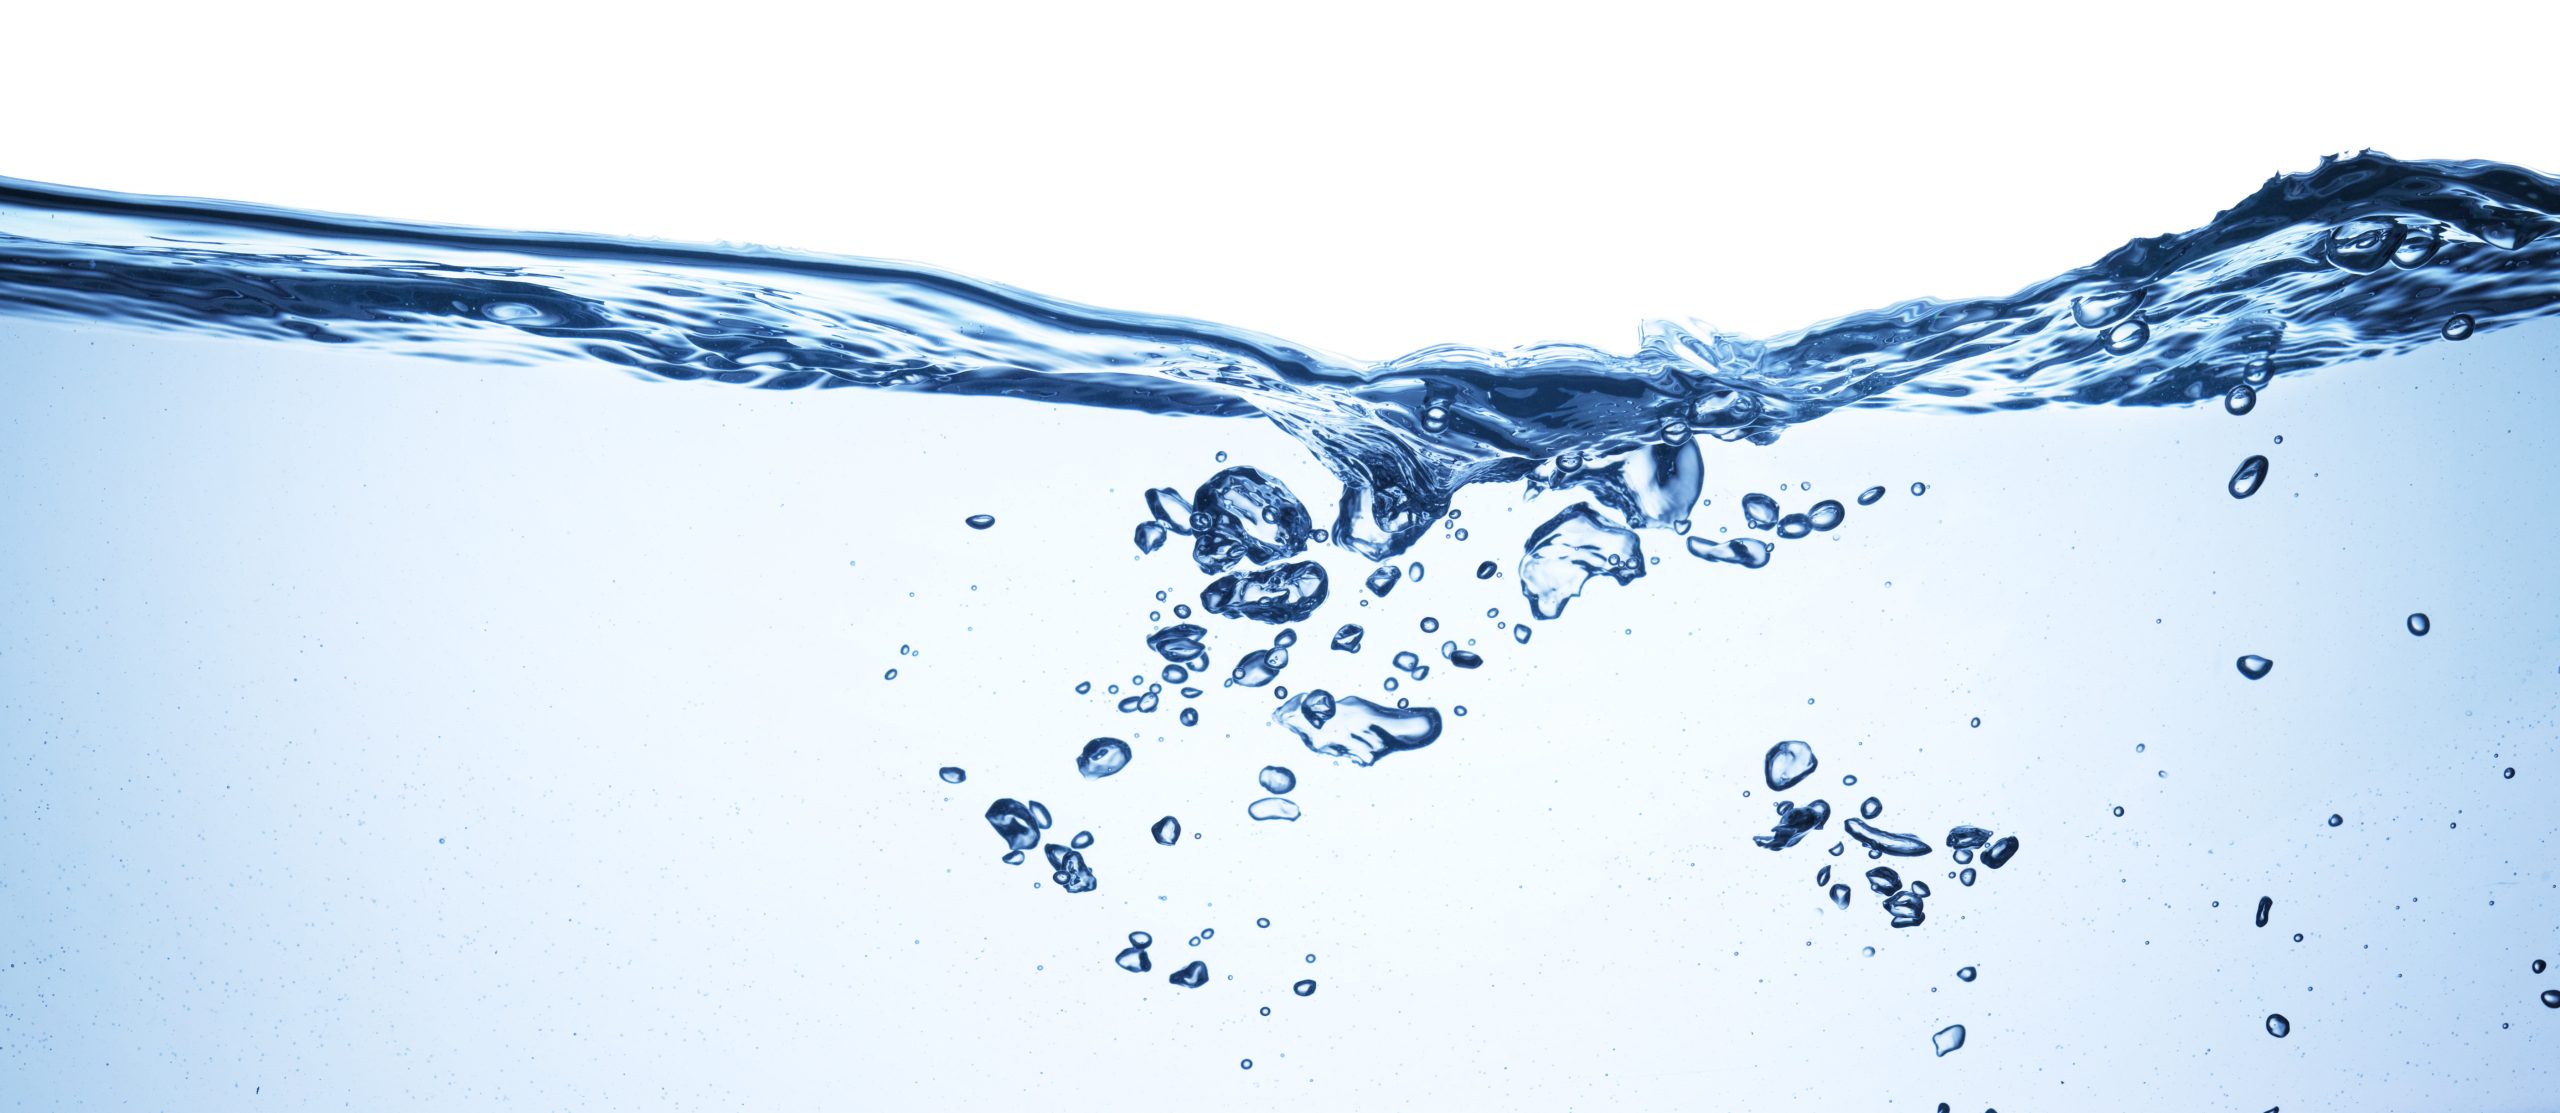 Wondernews Março 19 – Água, um recurso essencial à vida, mas cada vez mais escasso